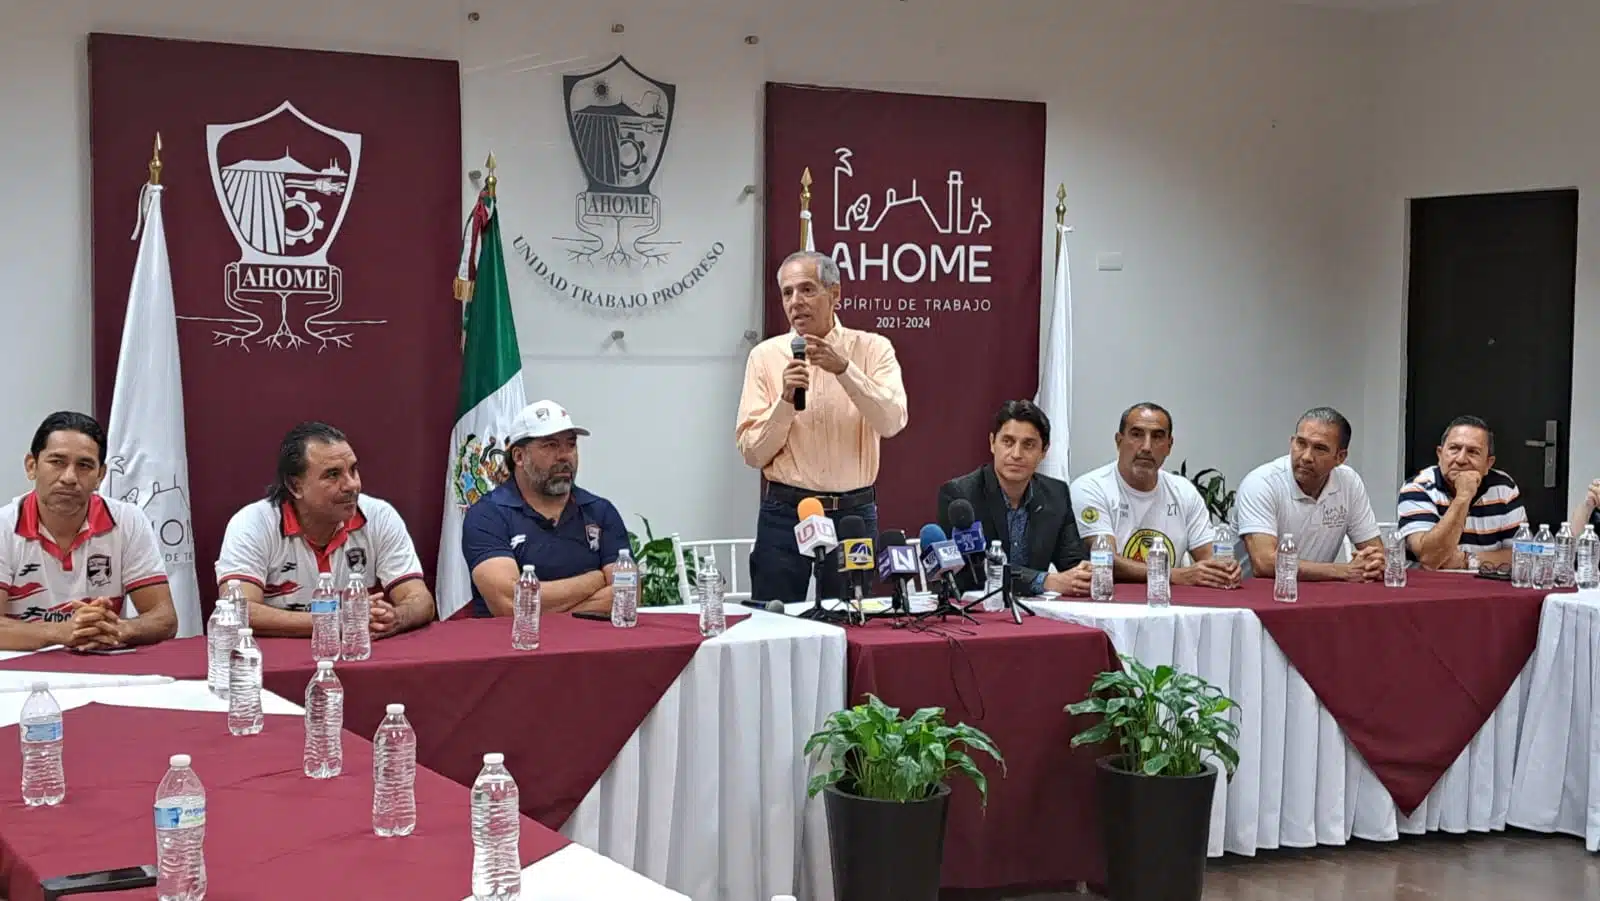 Recepción de los jugadores de América y Chivas en Palacio Municipal